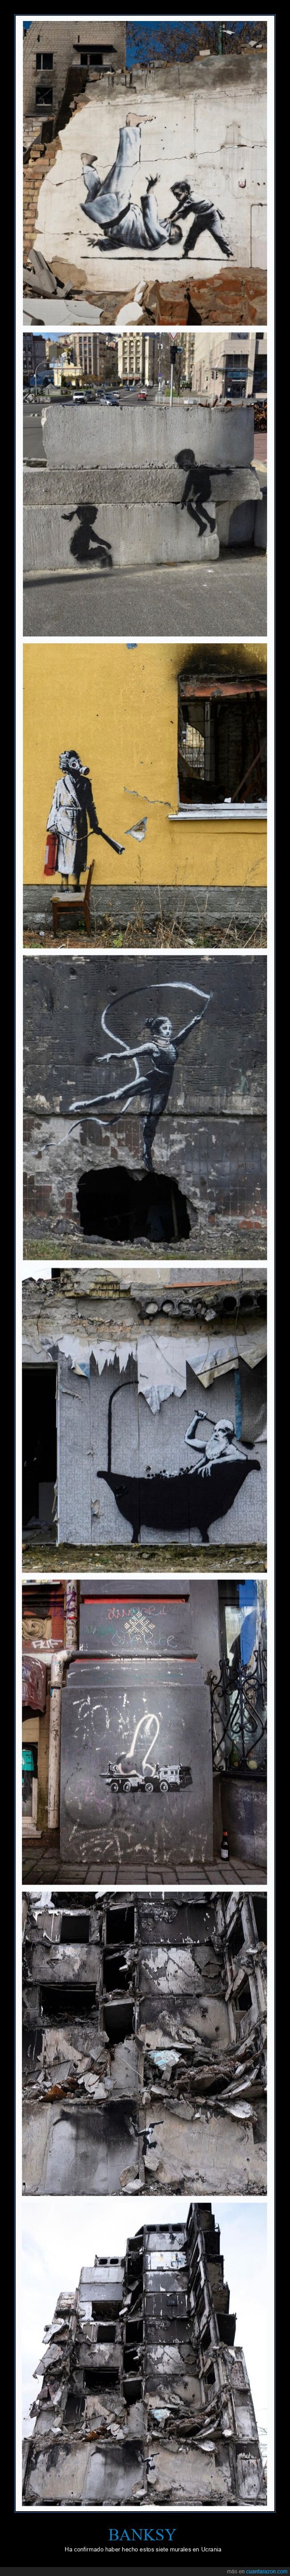 banksy,murales,ucrania